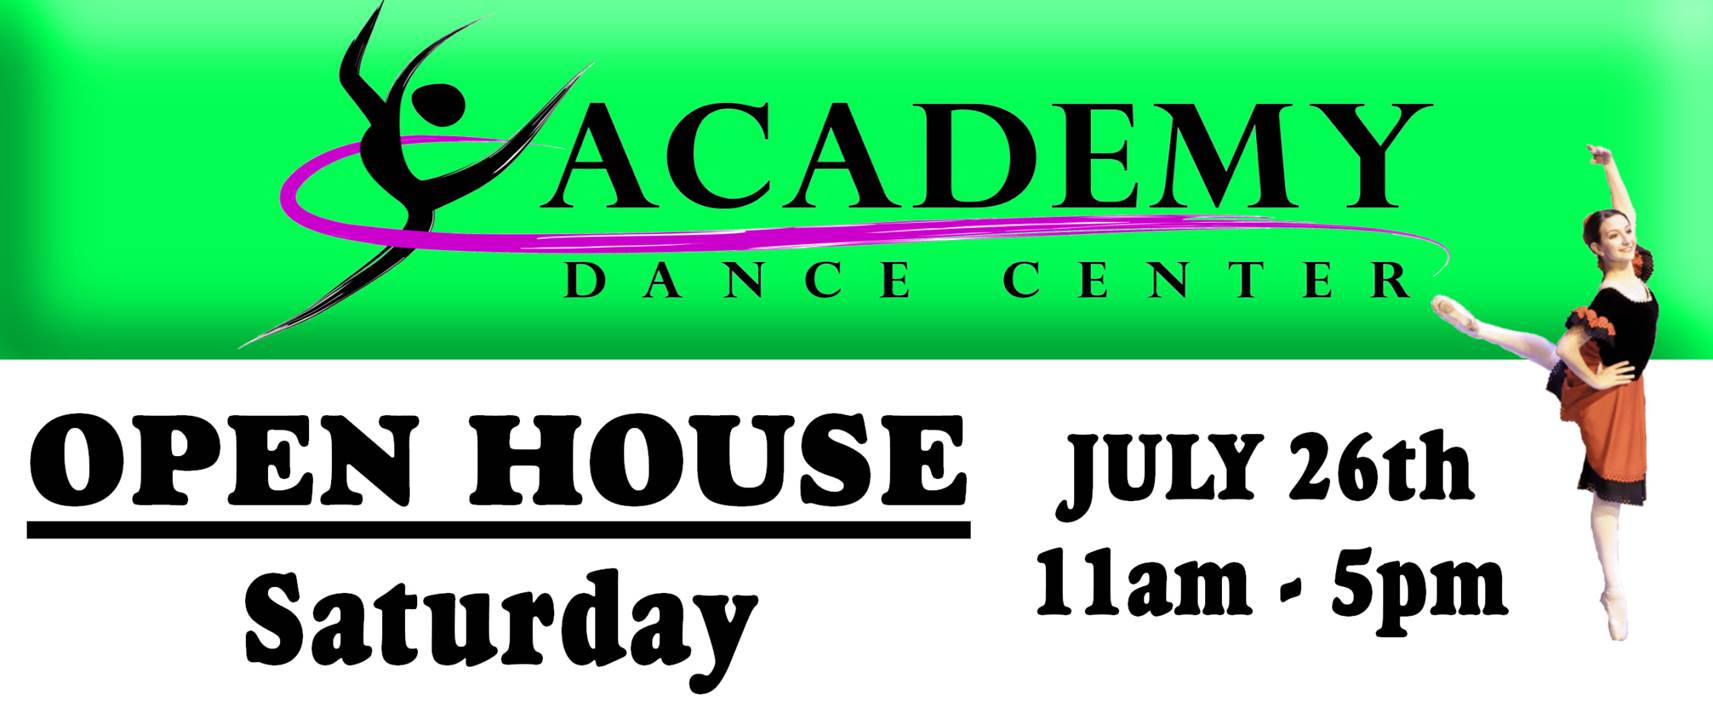 Academy Dance Center Open House